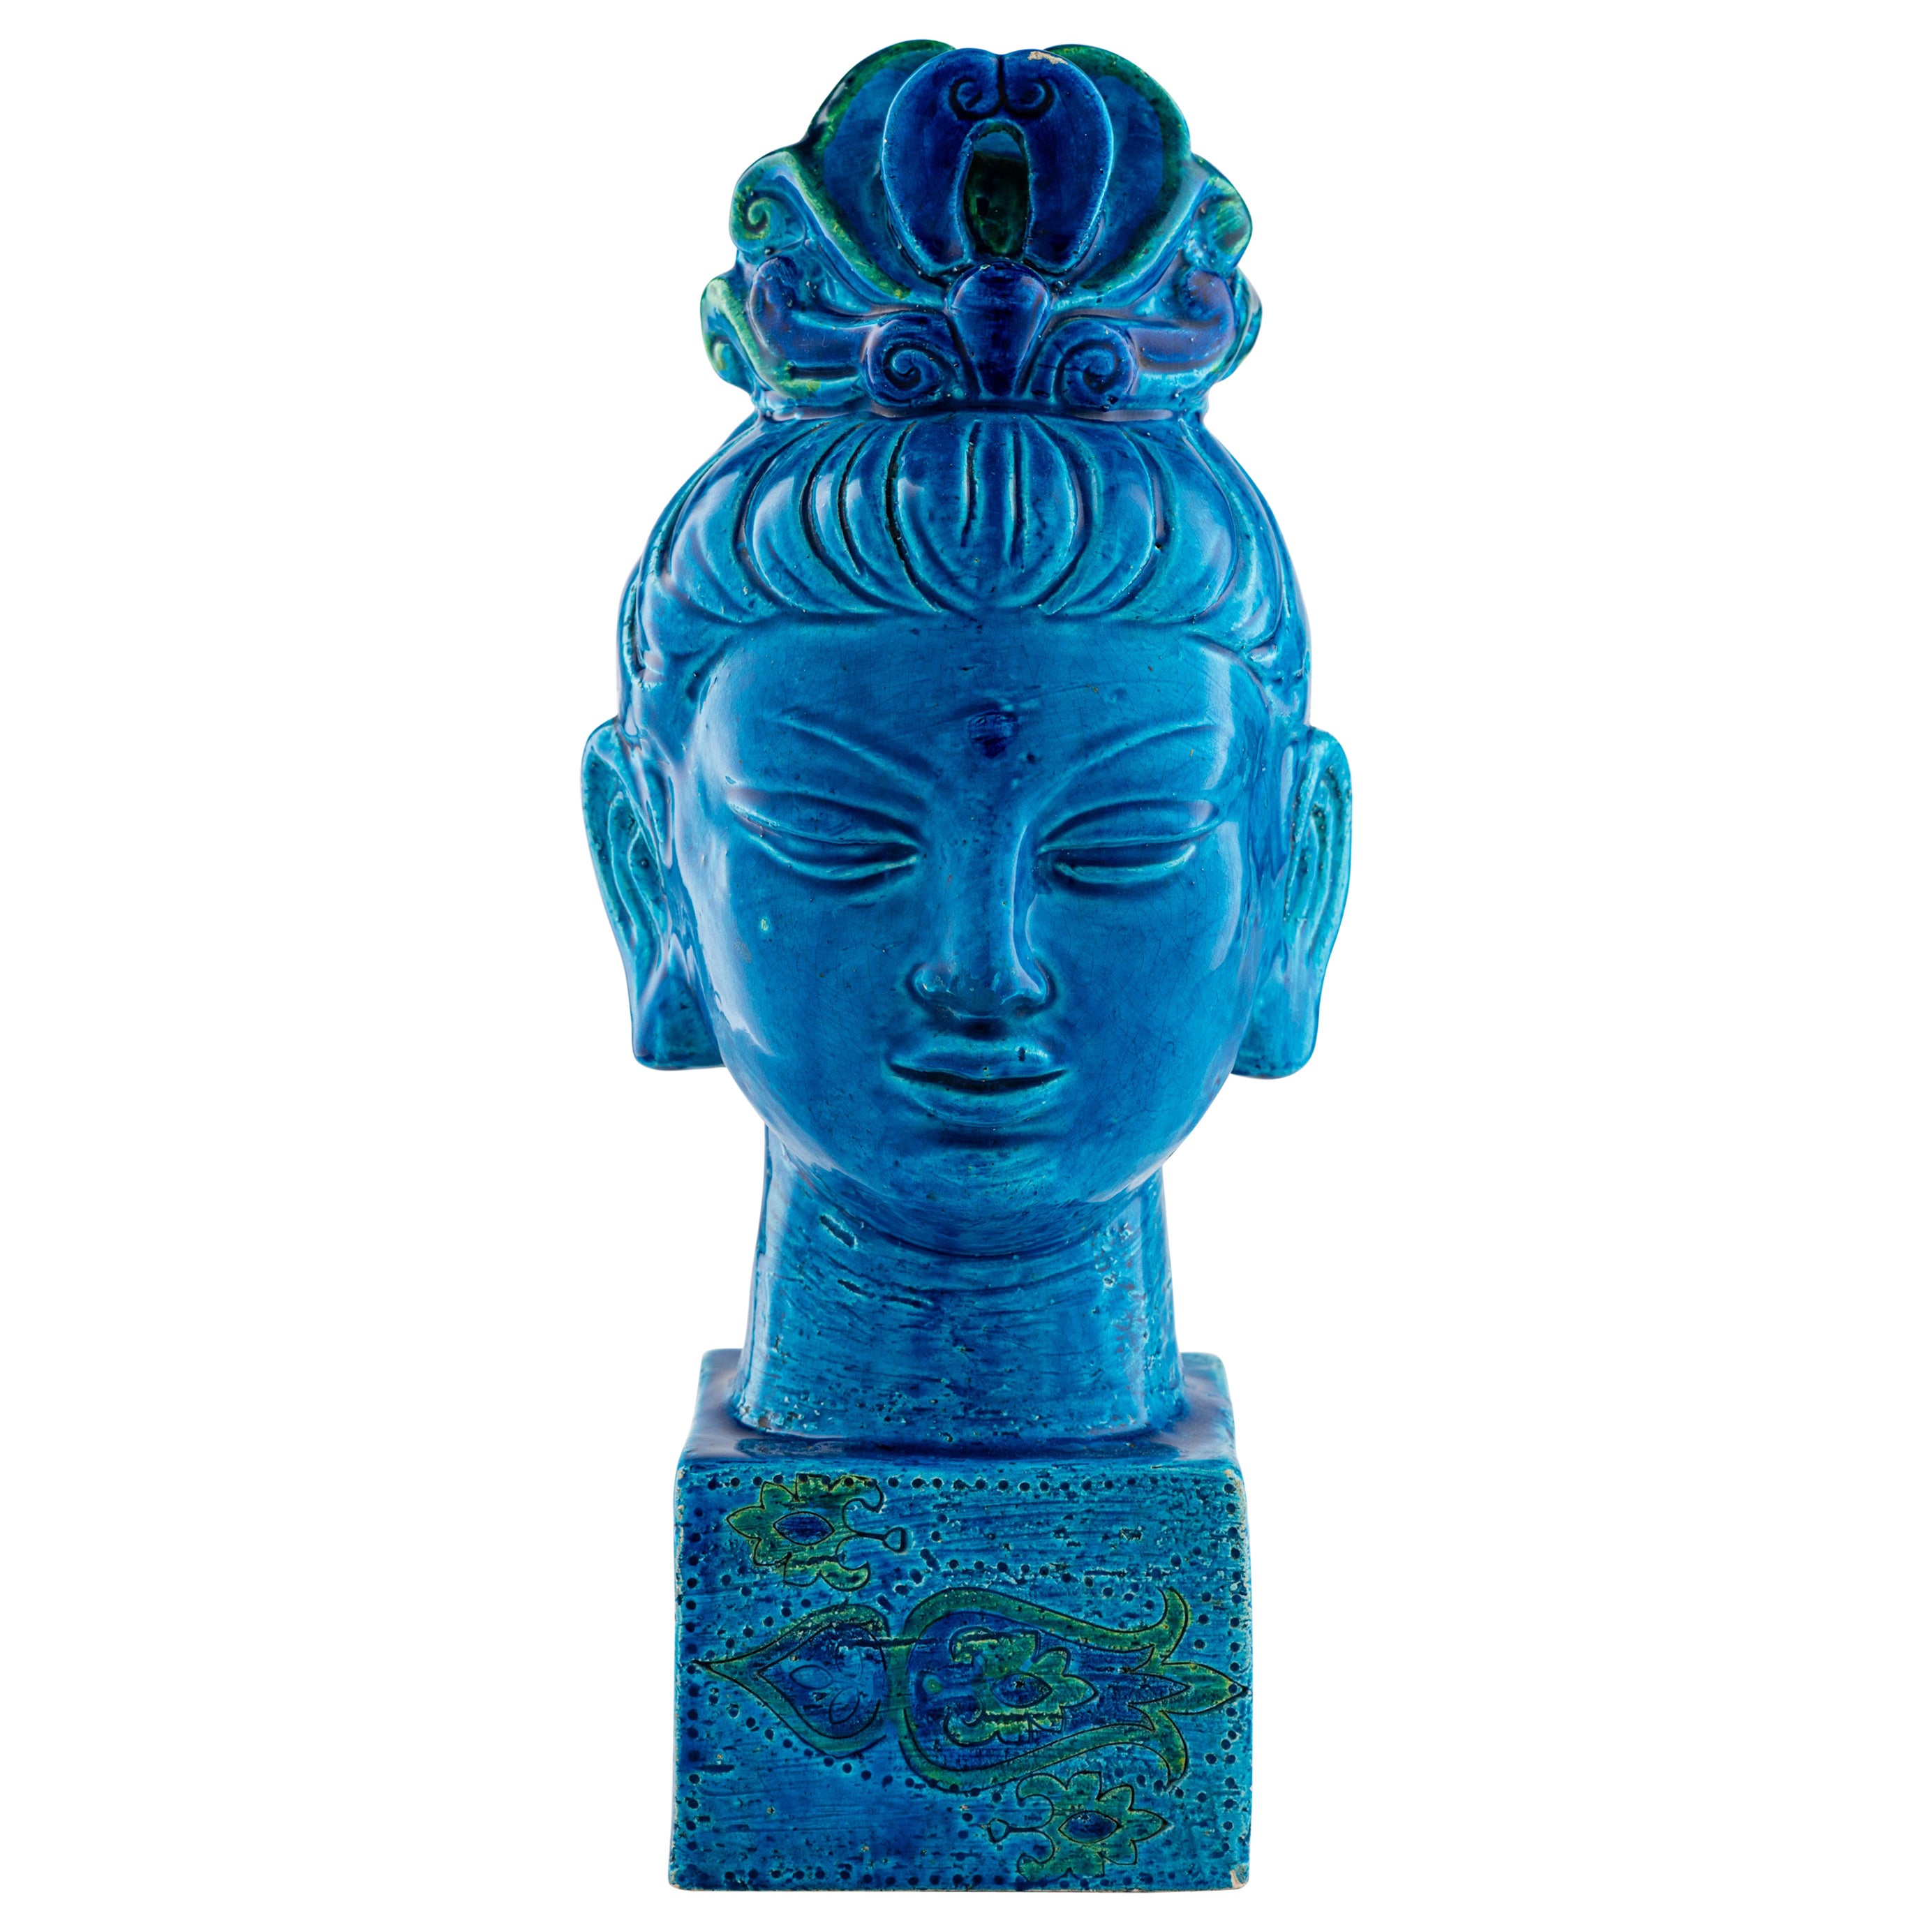 Bitossi Kwan Yin Buddha Coin Bank, Ceramic, Blue, Green Paisley, Signed